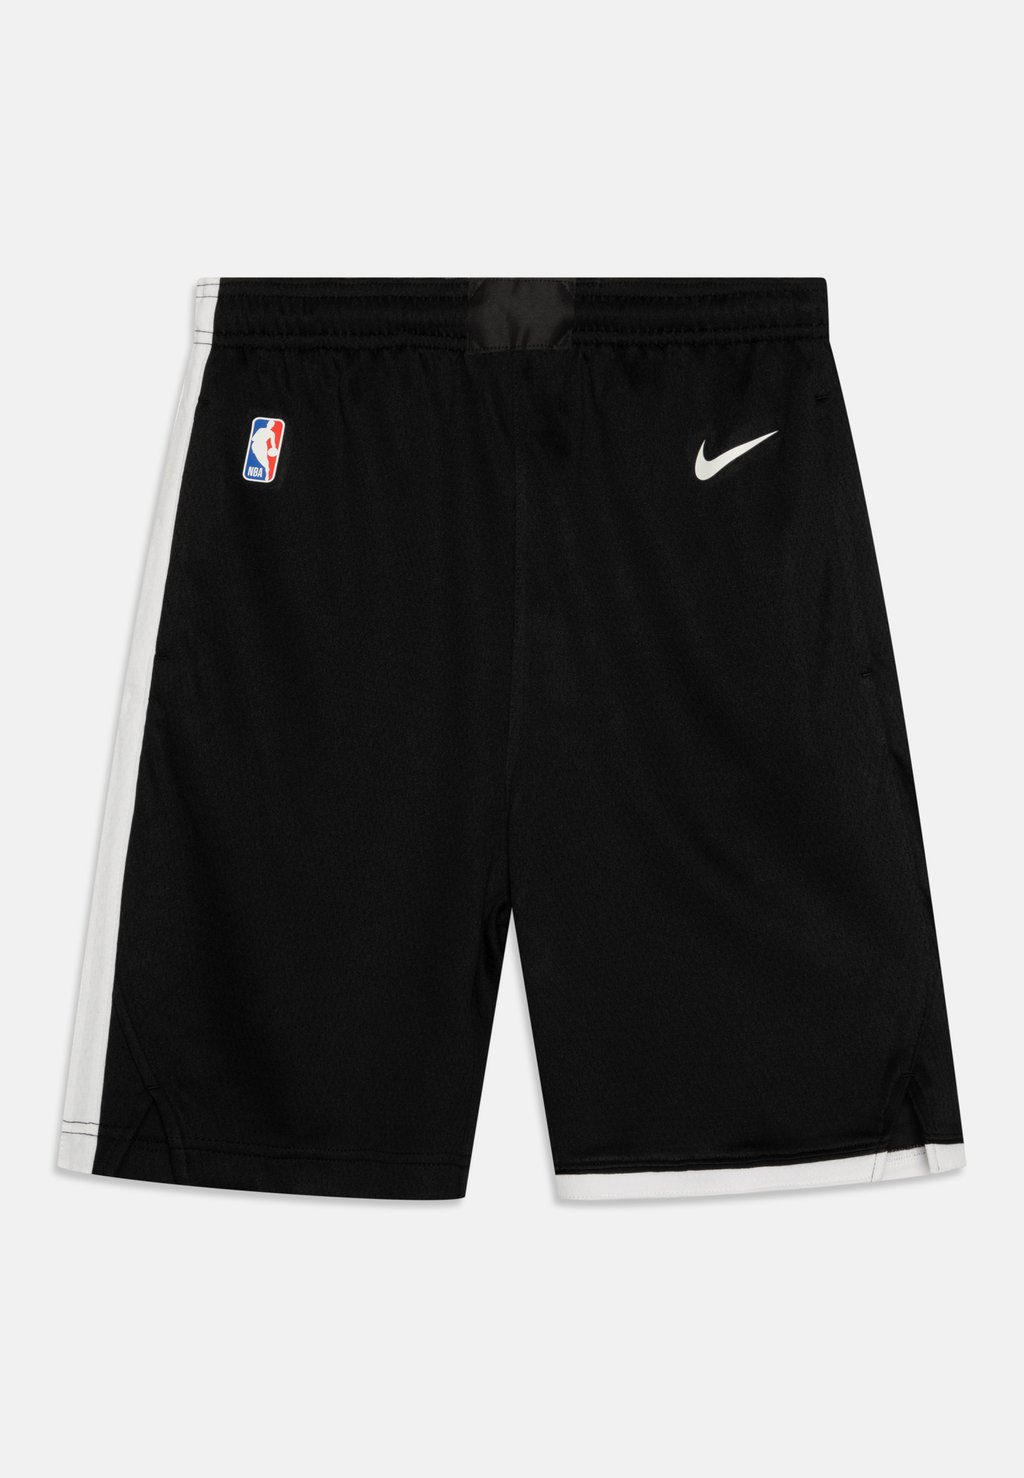 Спортивные шорты Nba Memphis Grizzlies City Edition Swingman Unisex Nike, черный